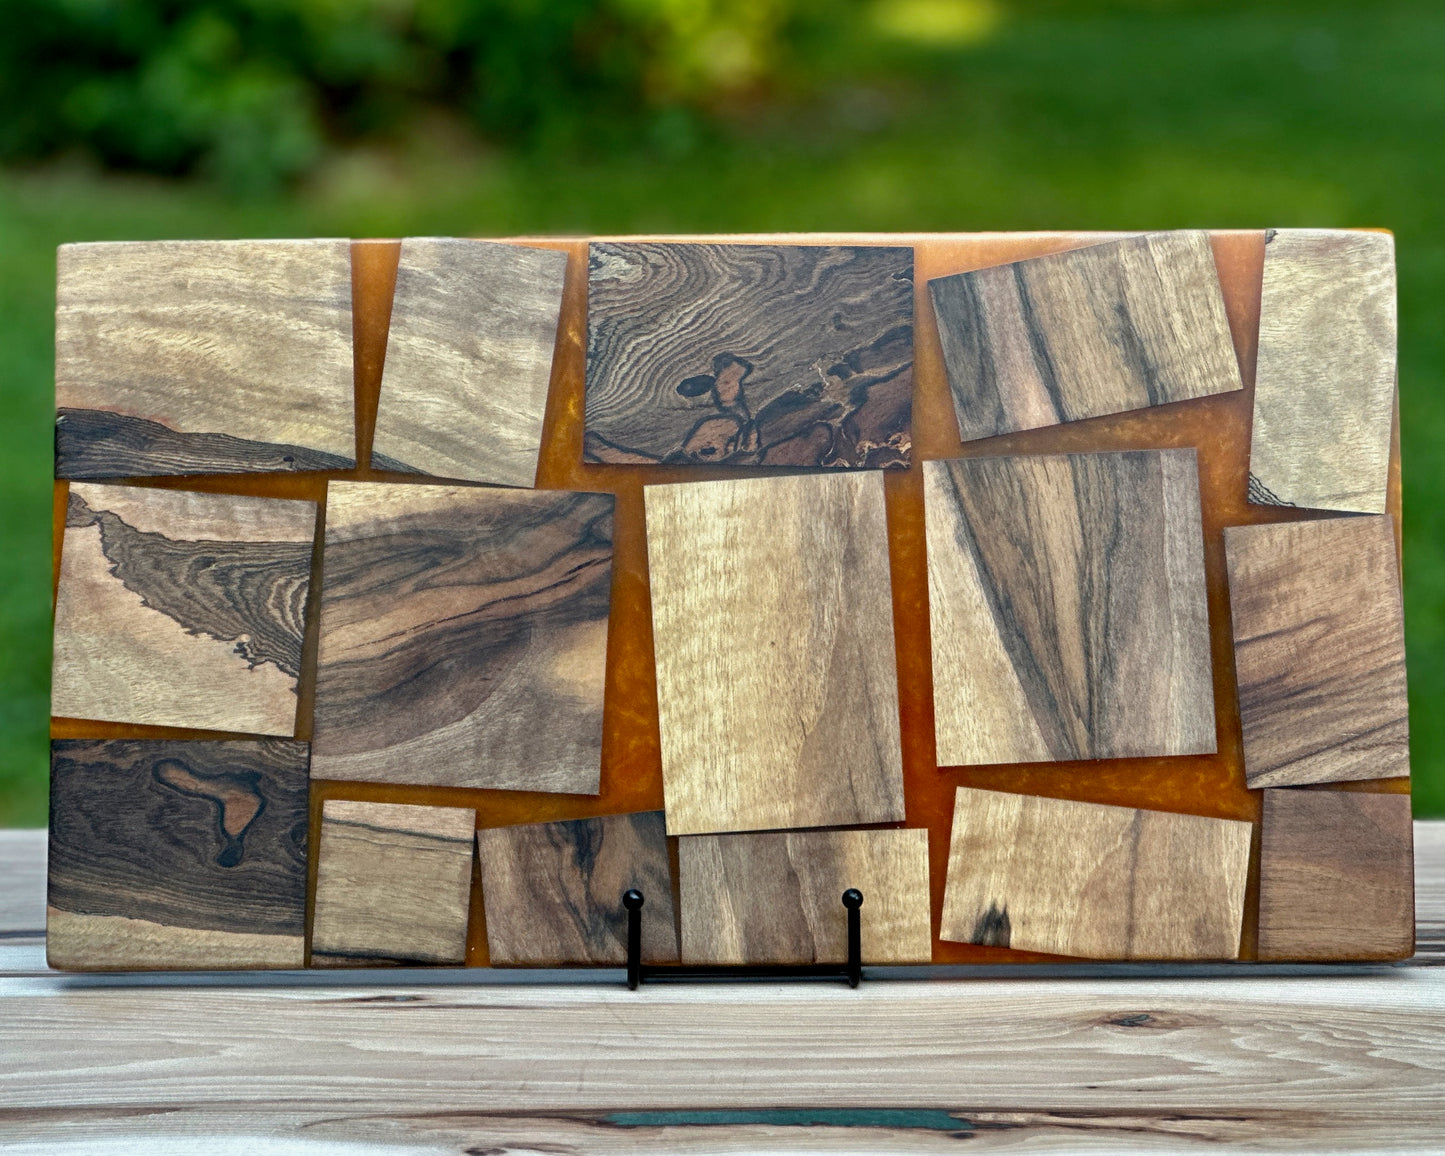 Black Walnut Wood pieces & Orange Epoxy Cutting Board